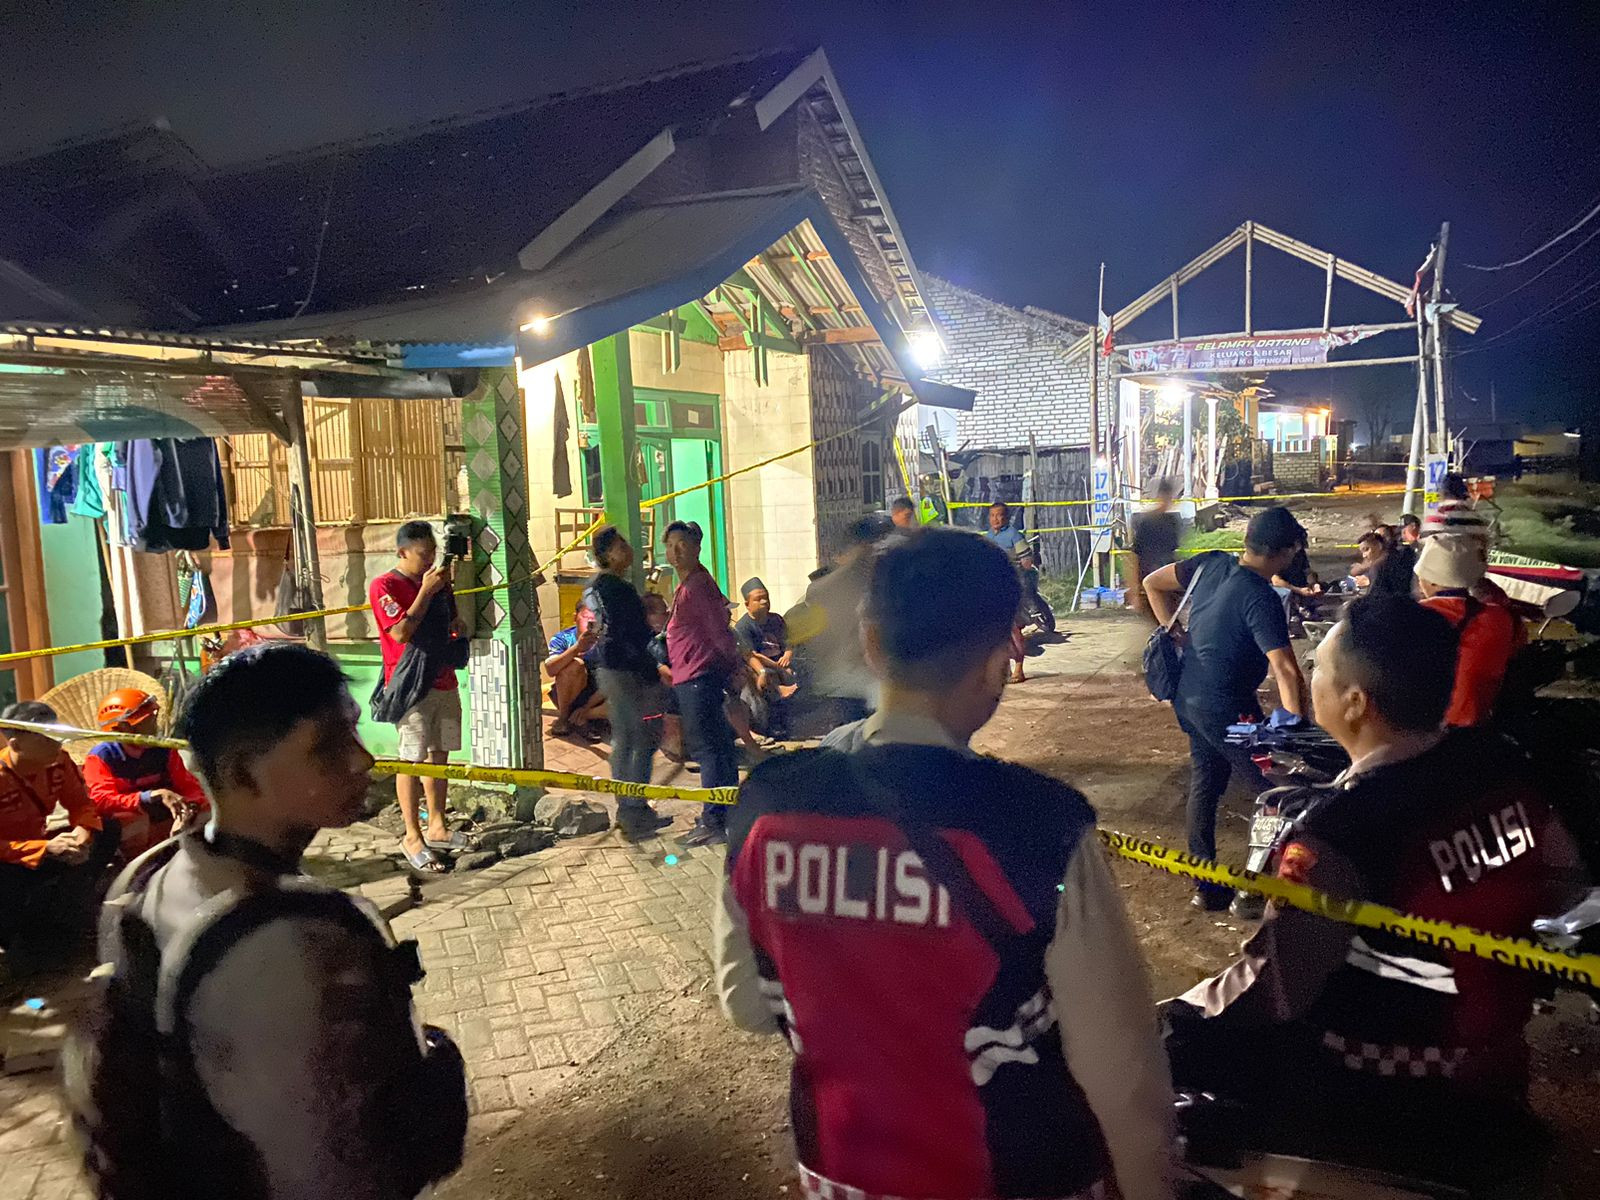 Bondet Meledak di Gudang Pasuruan, 1 Orang Tewas dan 3 Rumah Rusak - JPNN.com Jatim